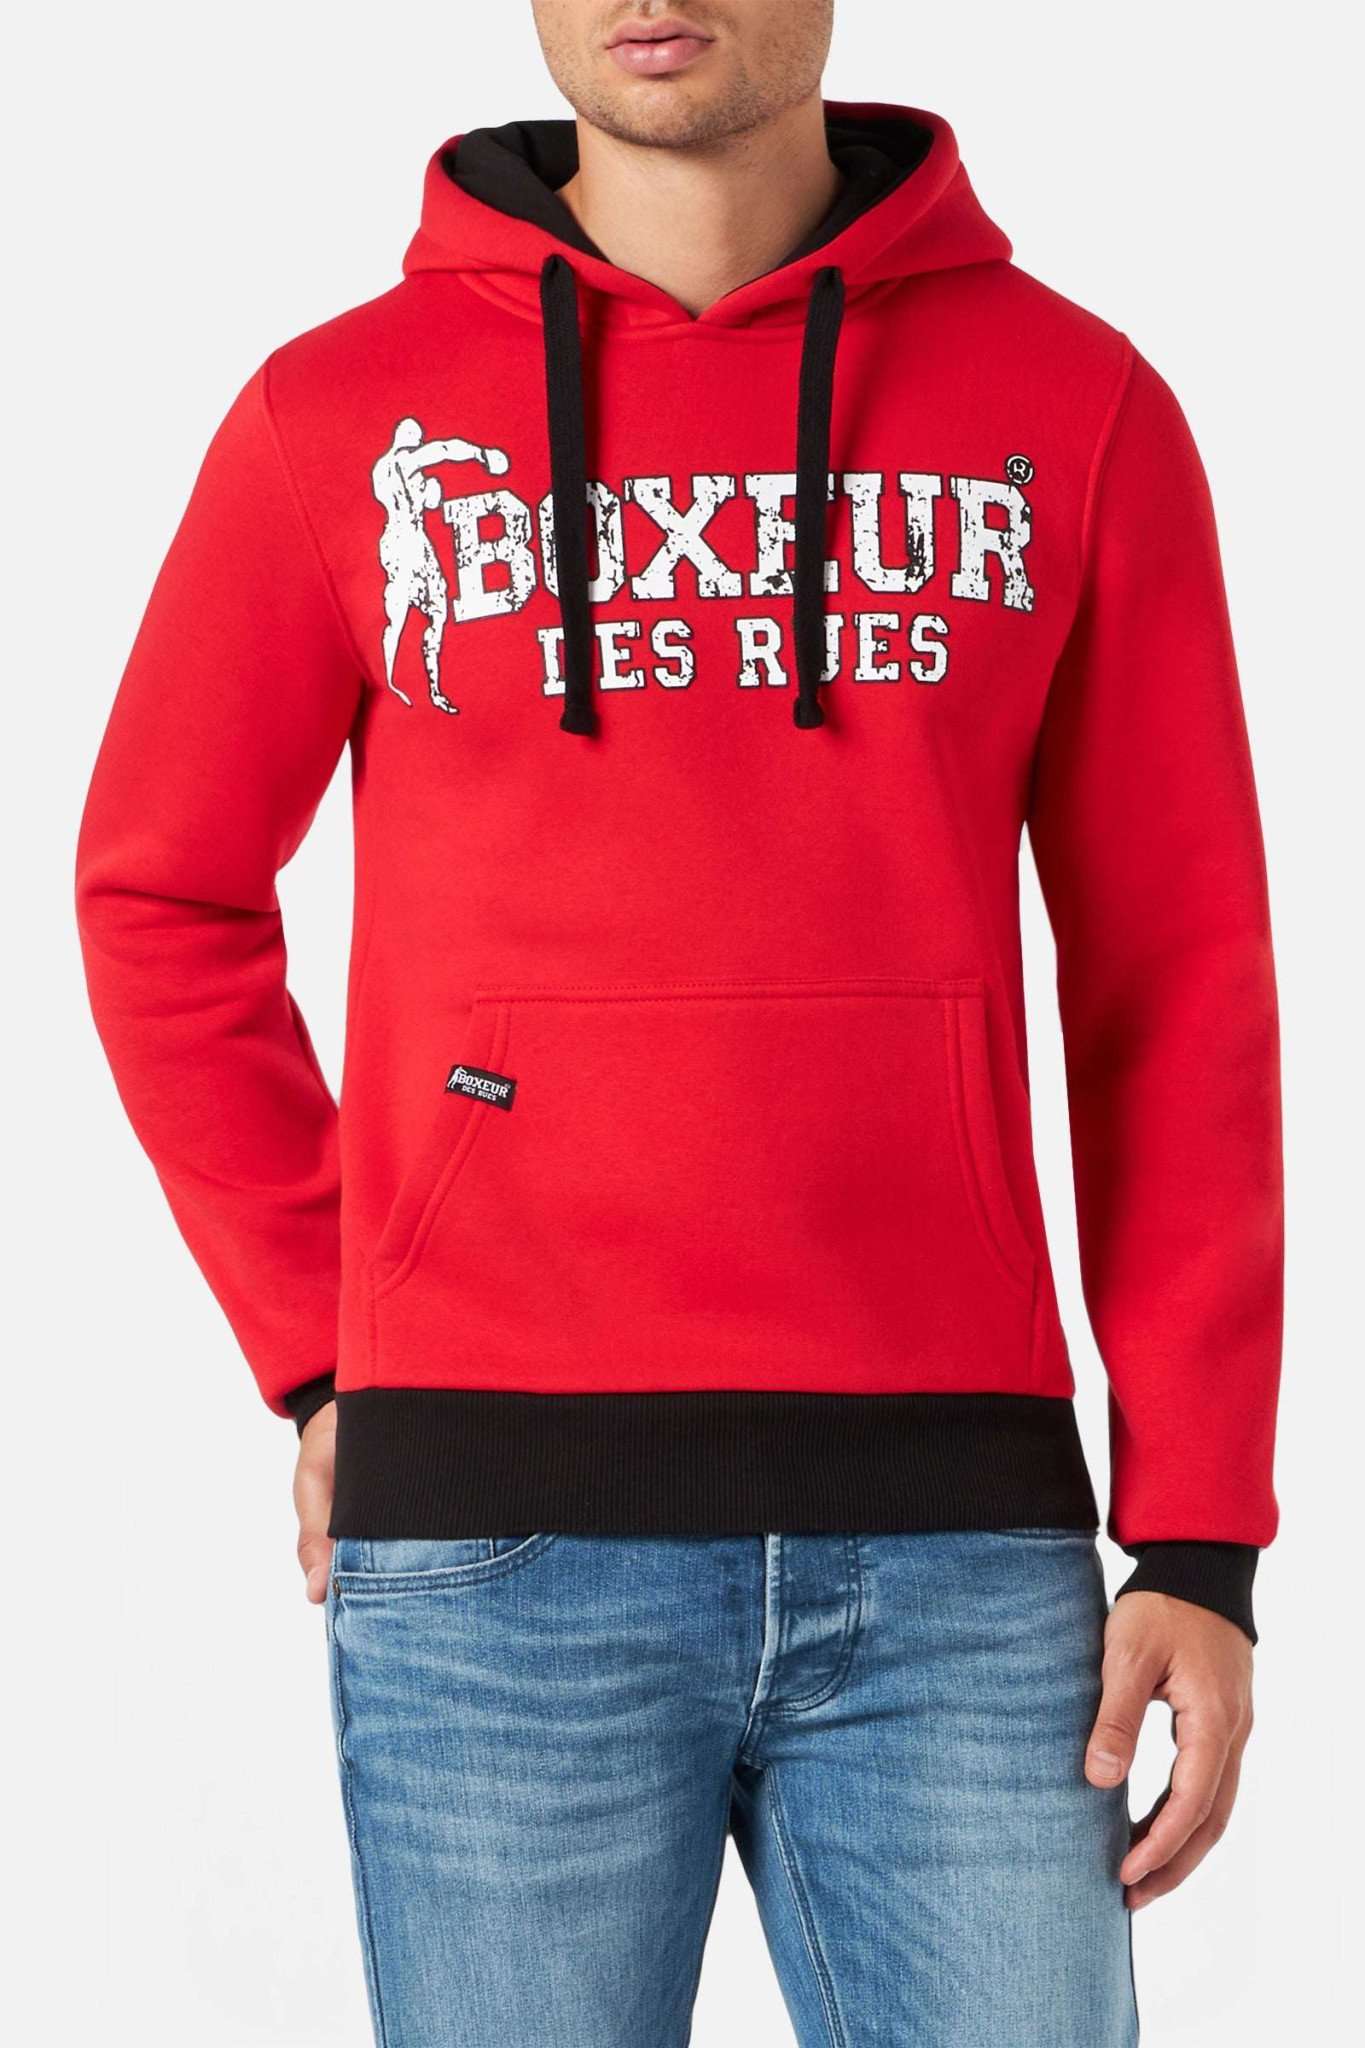 Man Hoodie Sweatshirt in Red Kapuzenpullover Boxeur des Rues   